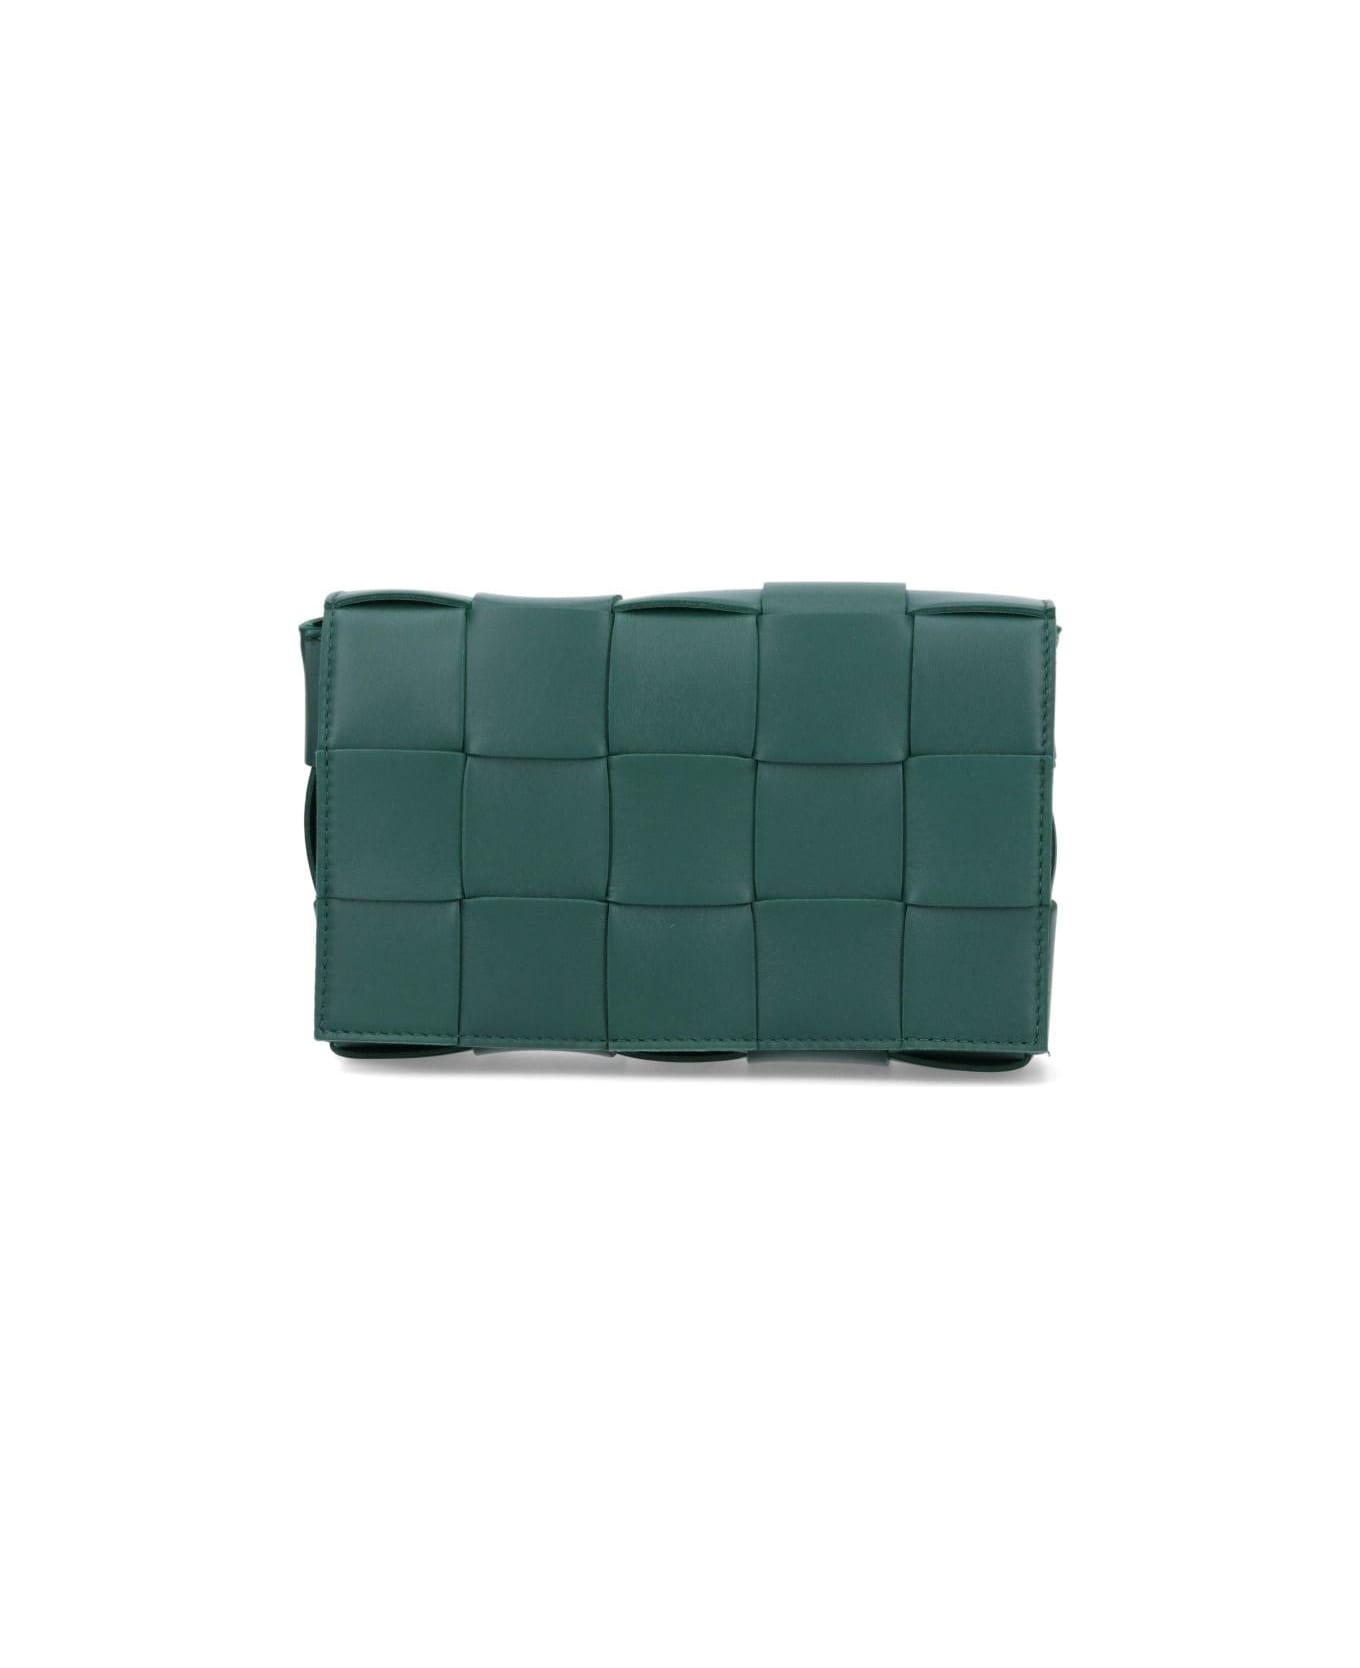 Bottega Veneta Casette Cross-body Leather Bag With Woven Pattern - Green